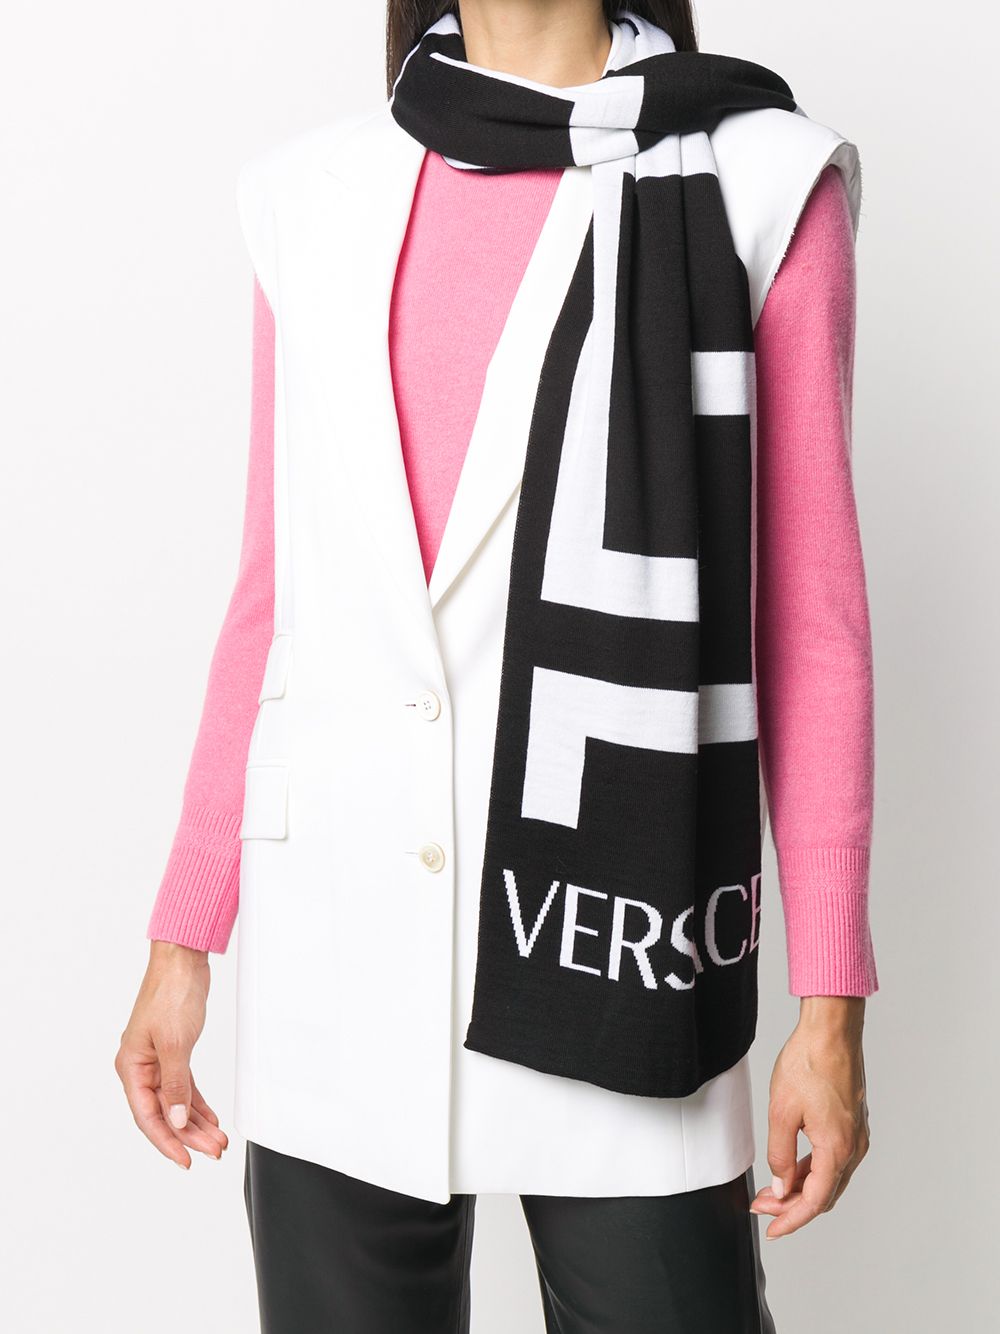 фото Versace шарф вязки интарсия с декором greca